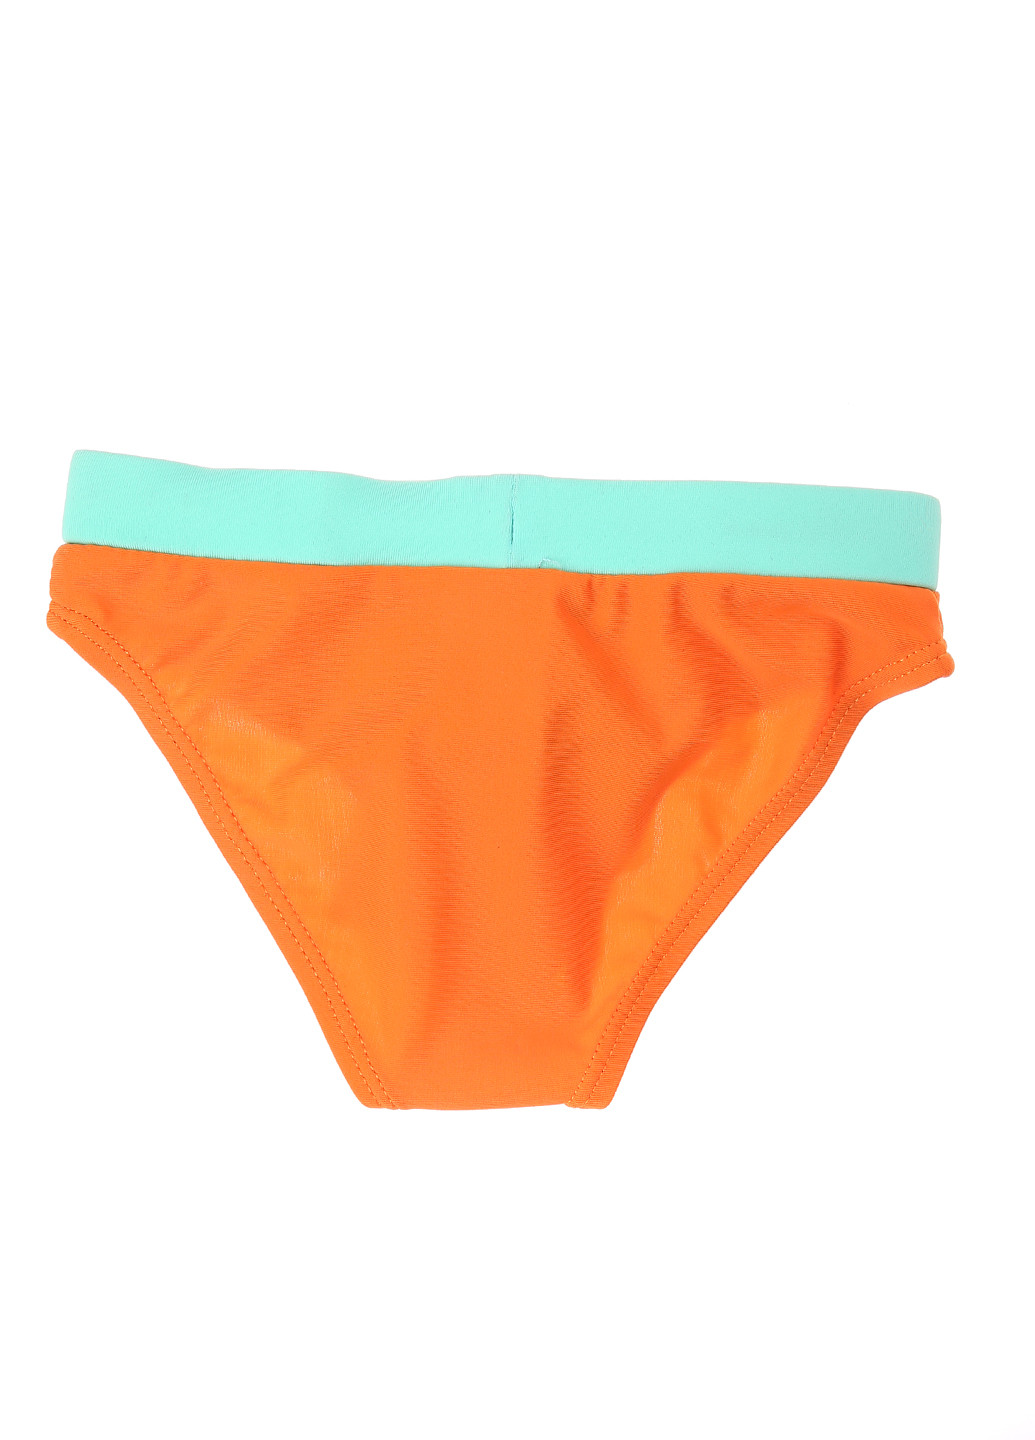 Плавки Zy Baby однотонные оранжевые пляжные трикотаж